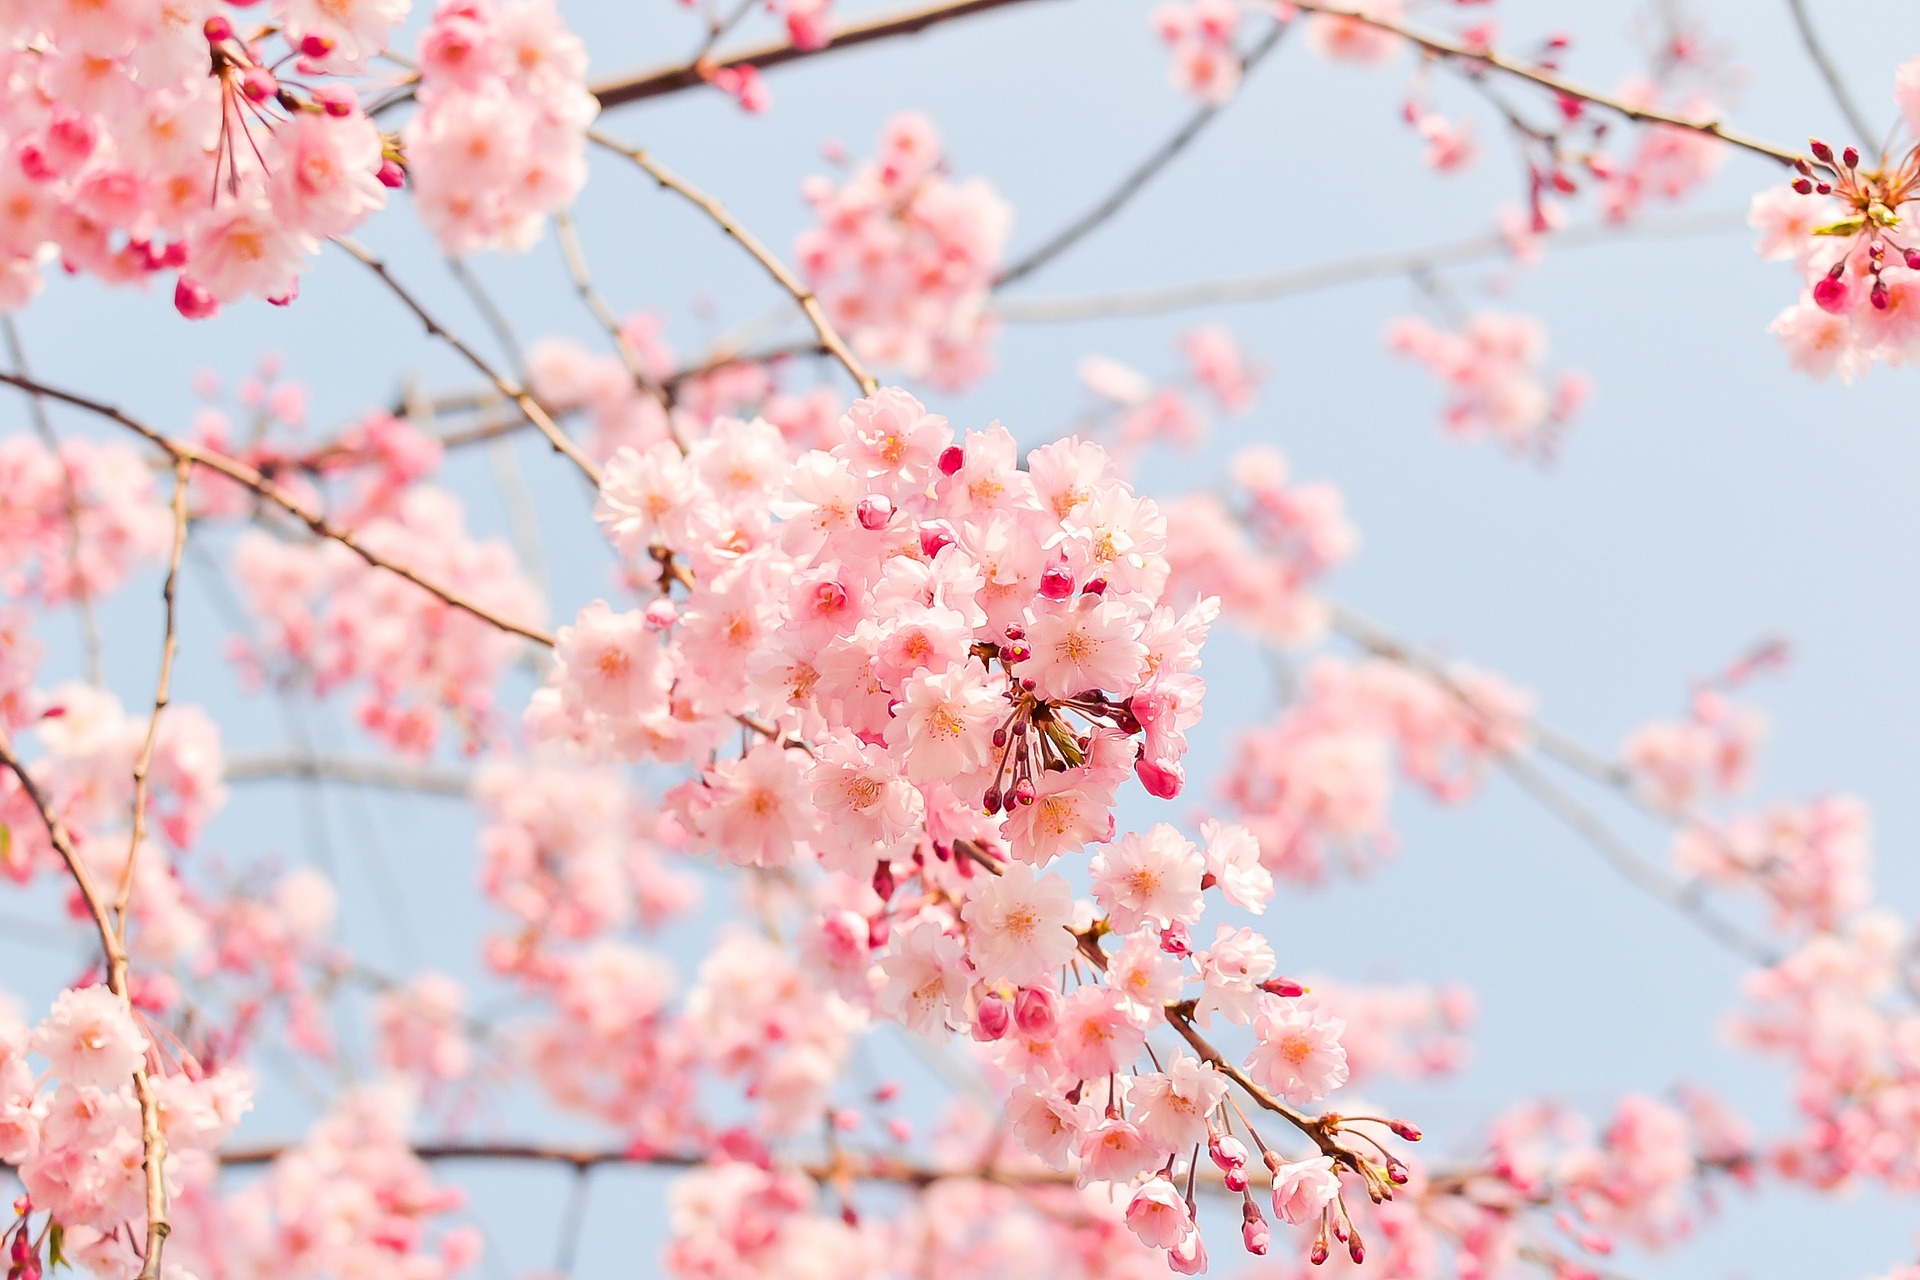 cherry-blossom-tree-g25e490690_1920.jpg